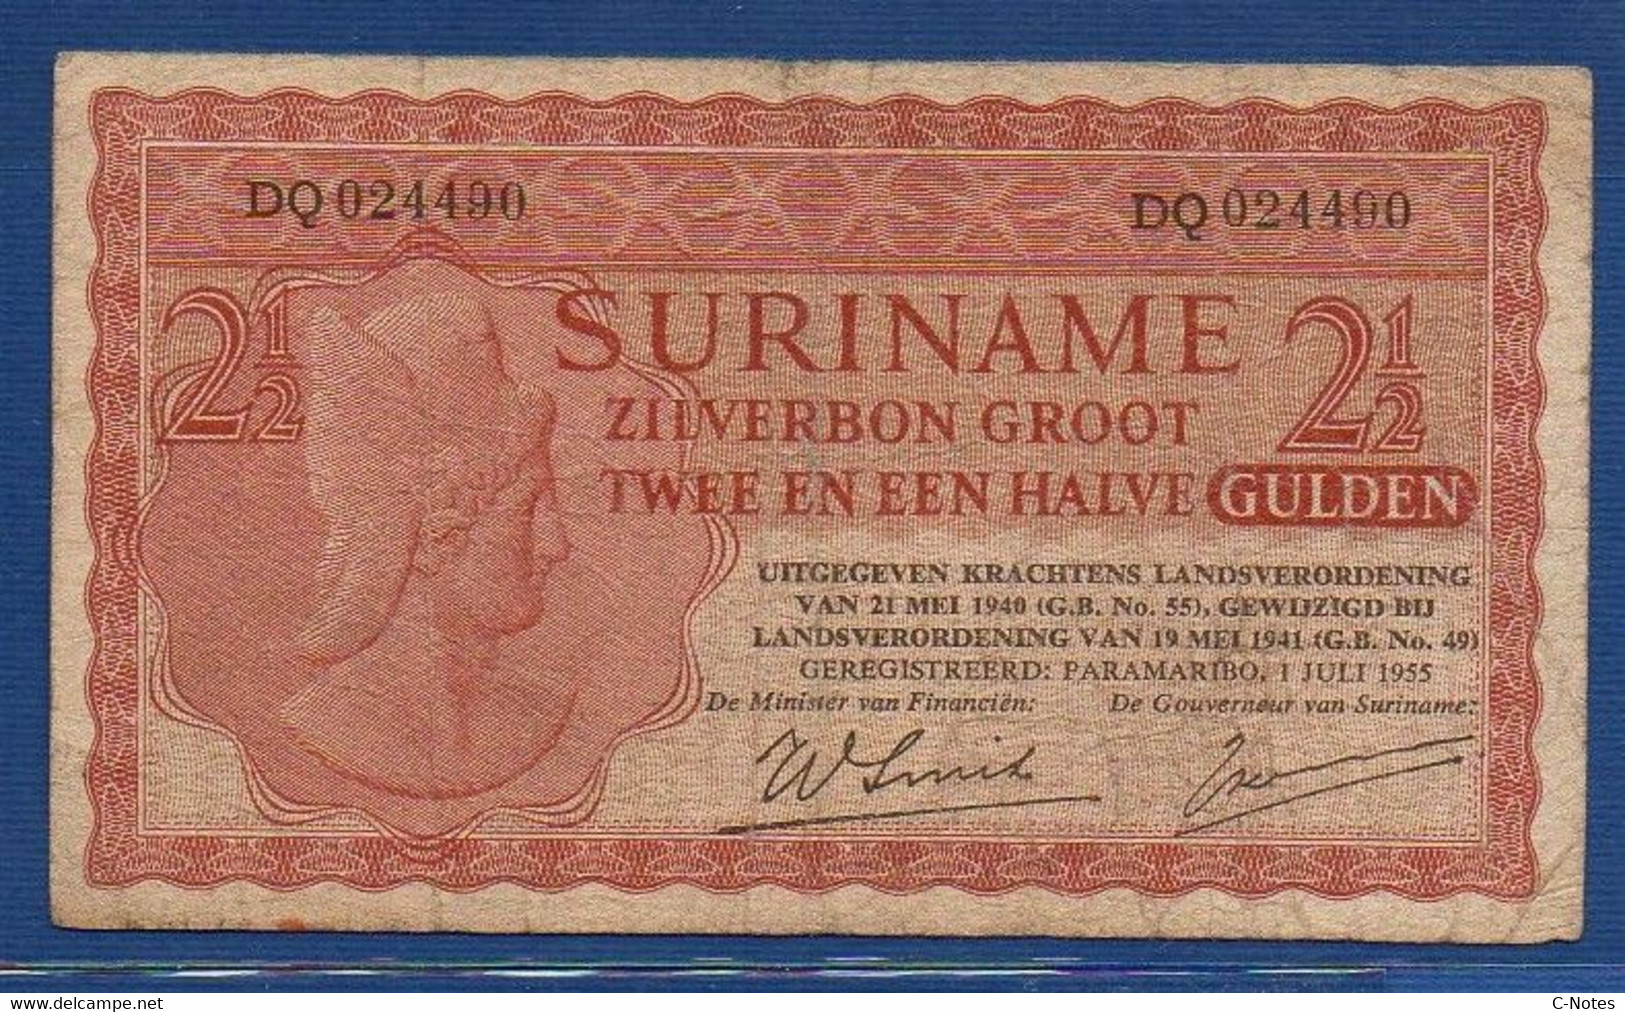 SURINAME - P.110 – 2½ Gulden 1955 F/VF, Serie DQ024490 - Surinam